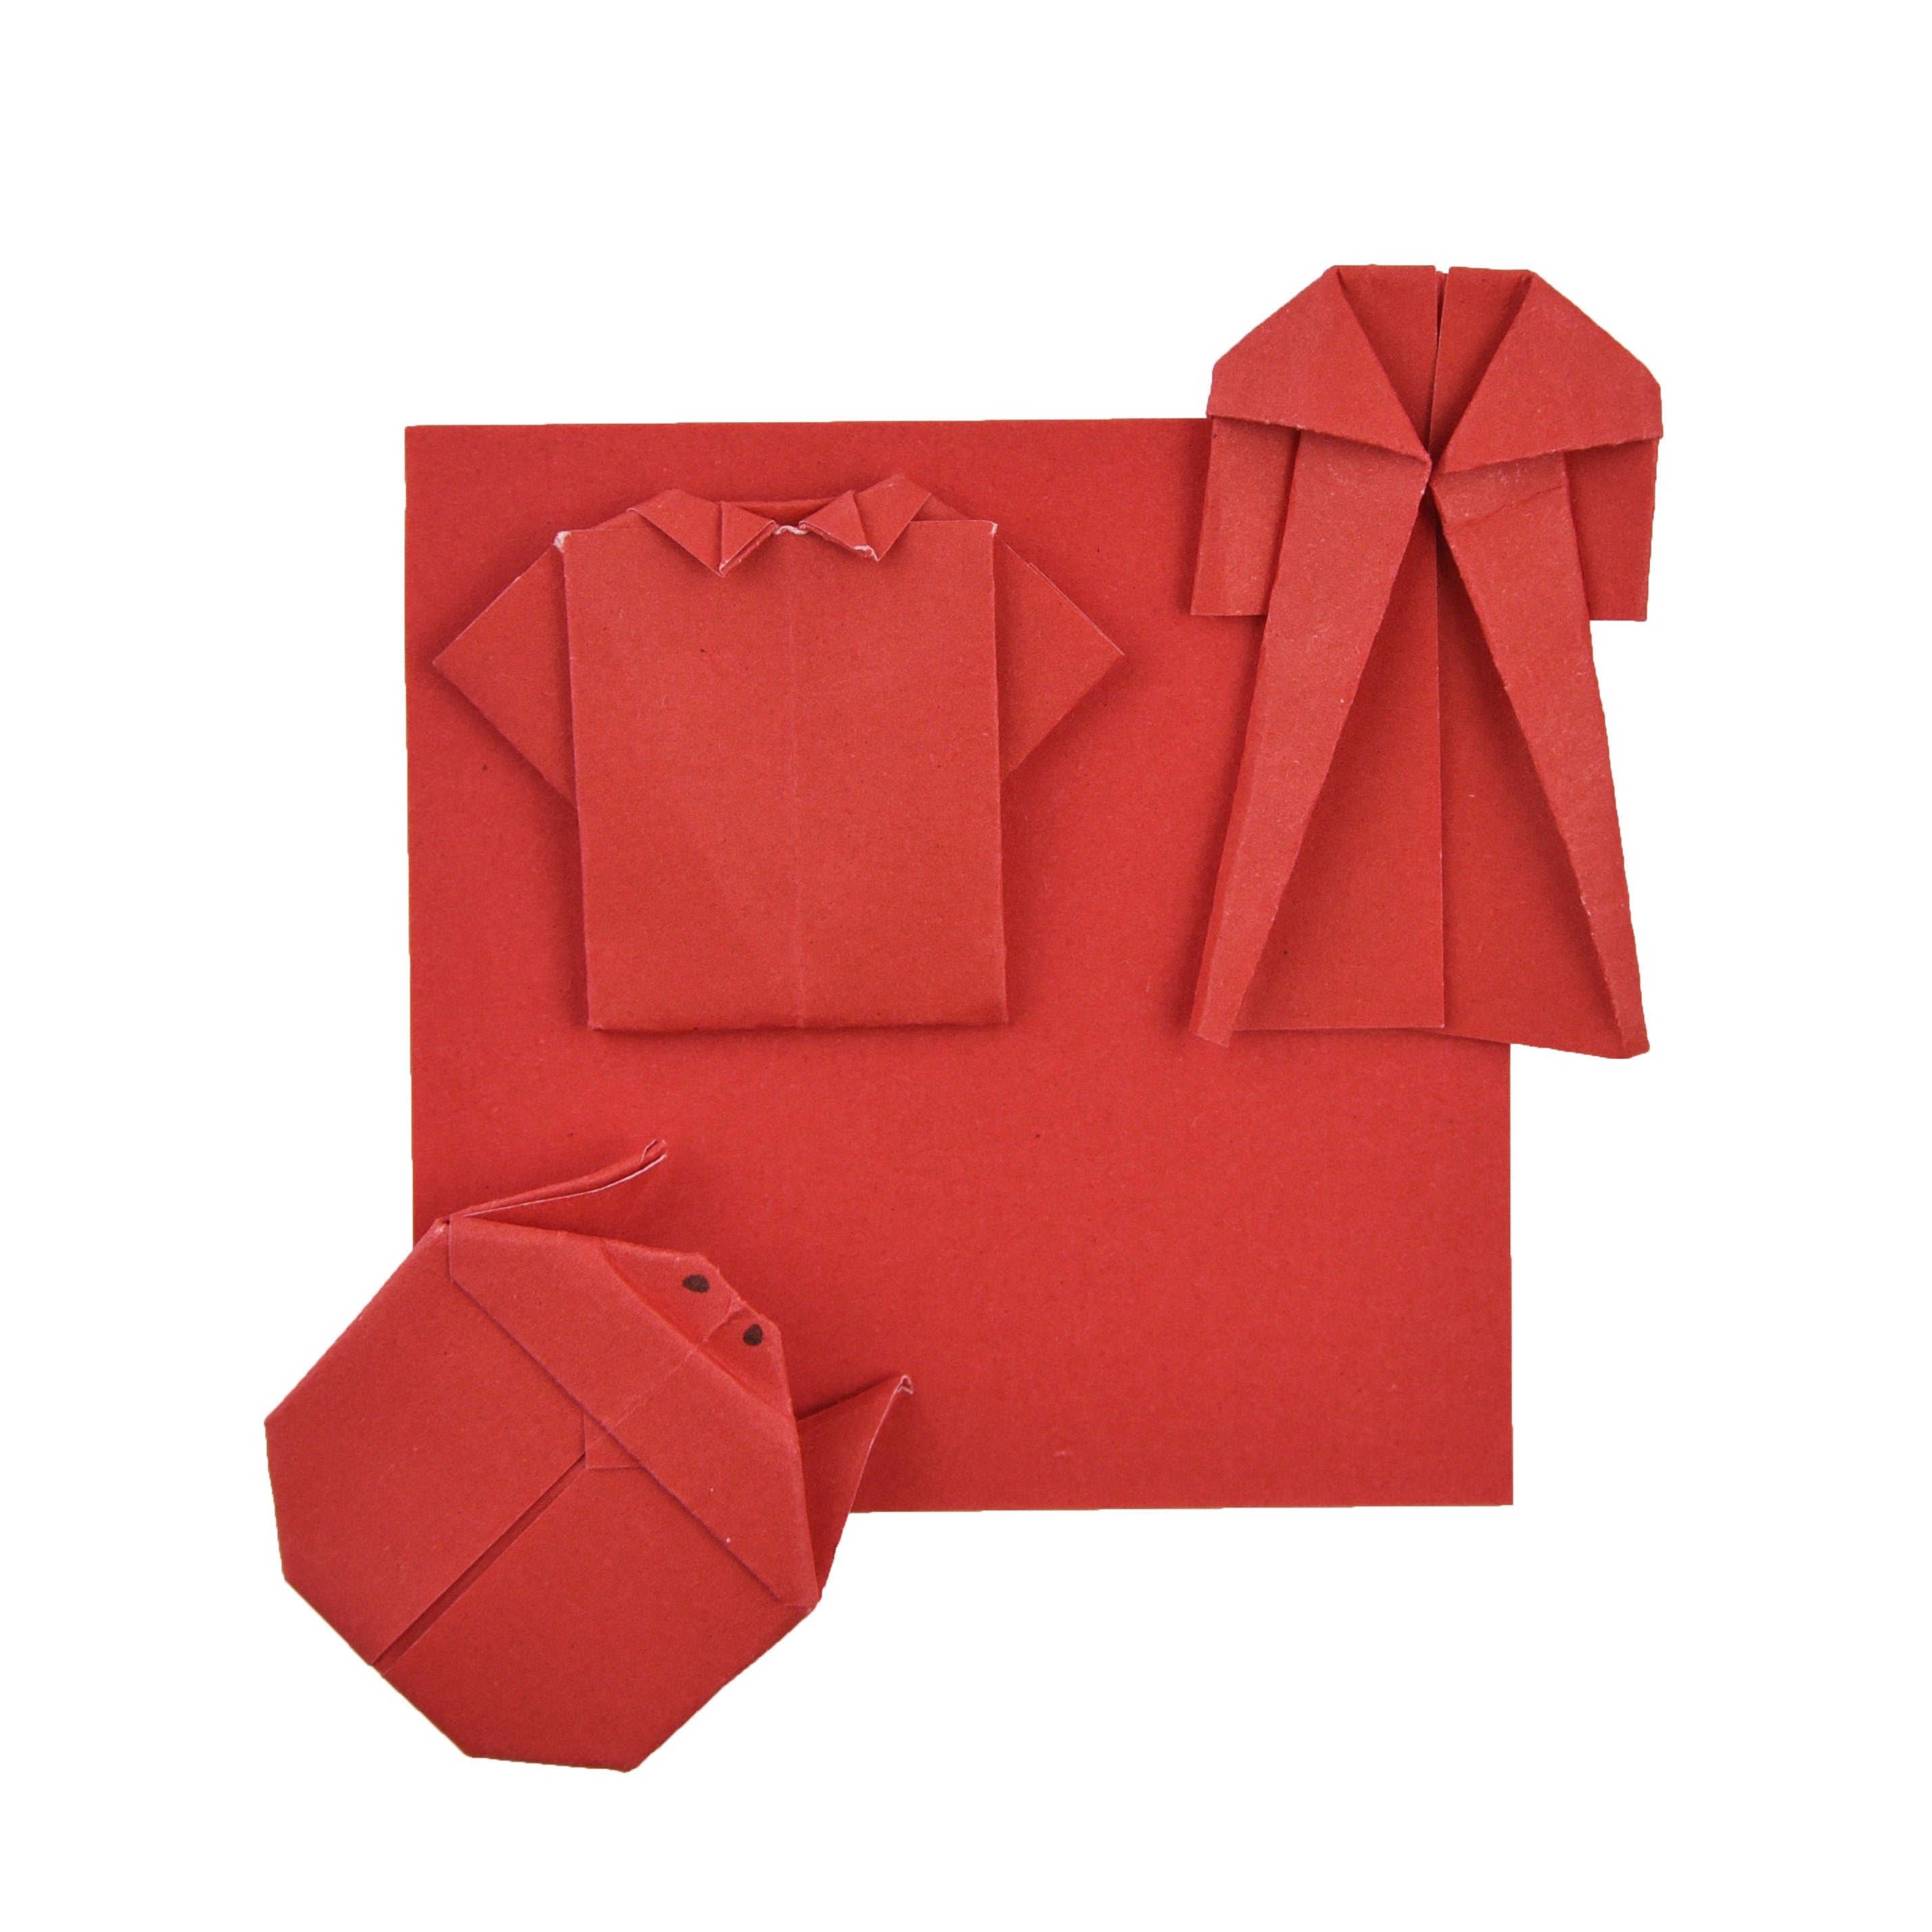 100 fogli di carta origami - 6x6 pollici - Confezione di carta quadrata per piegare, gru origami e decorazioni - S05